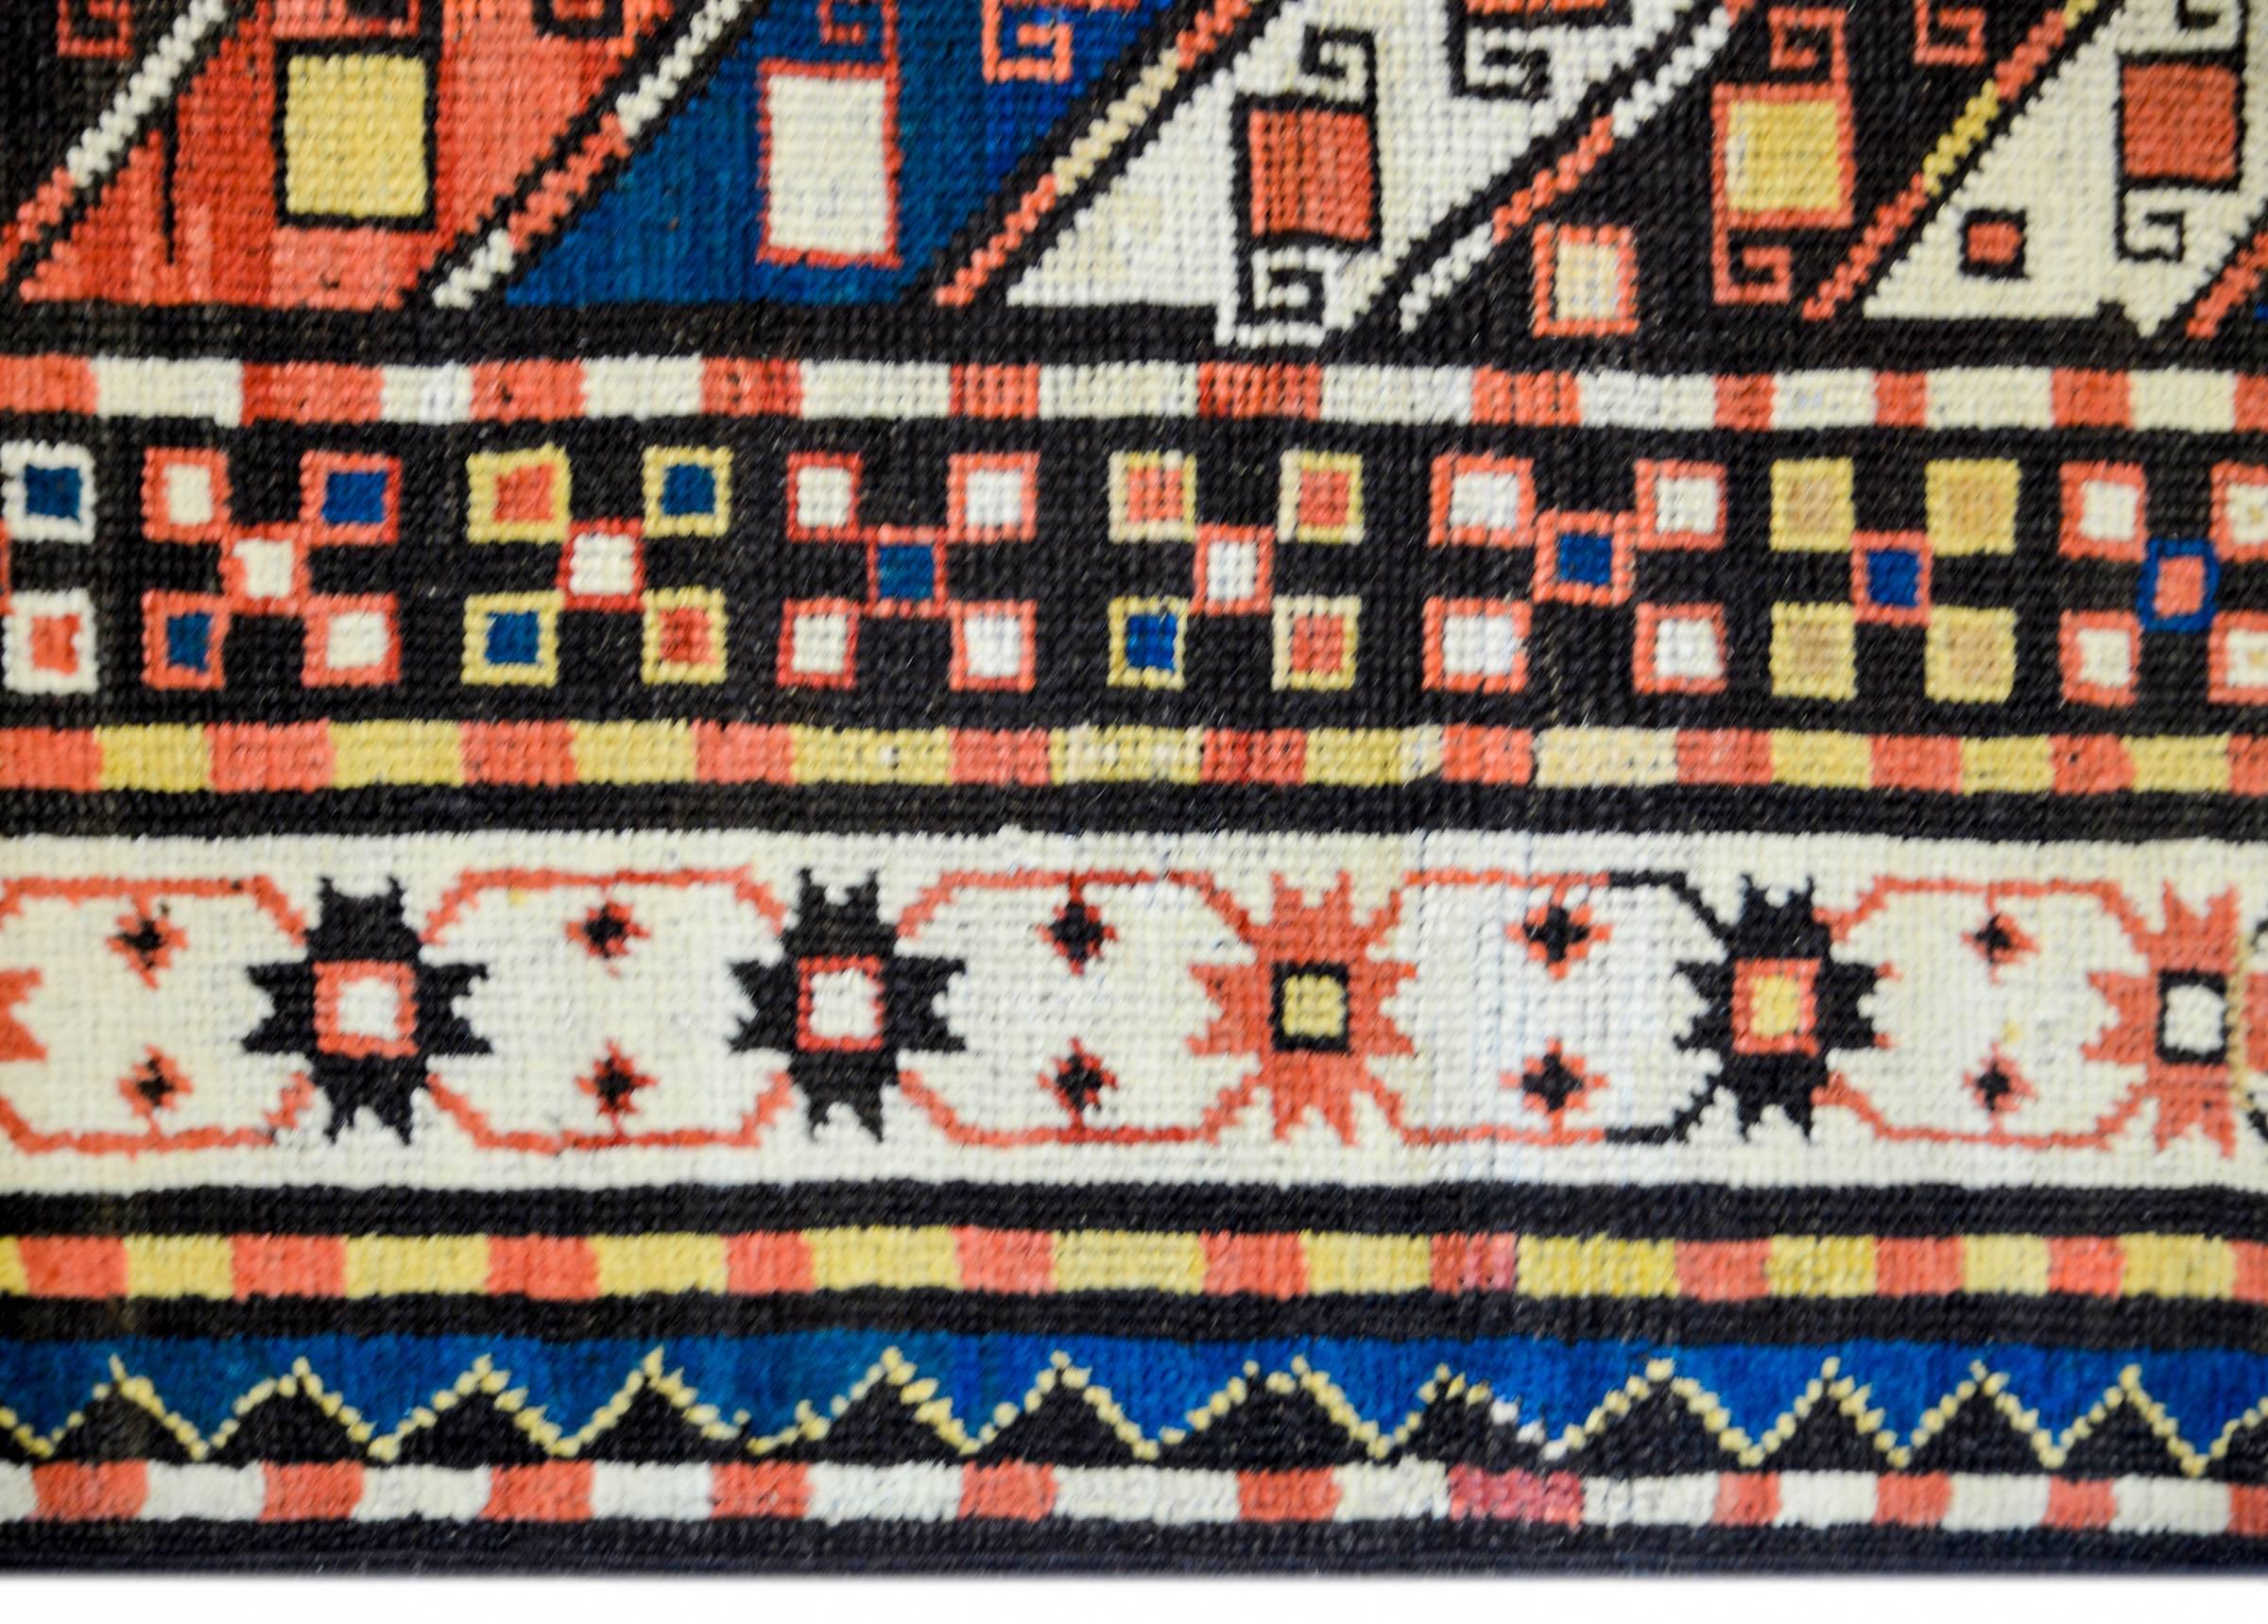 Fantastique tapis persan Kazak de la fin du XIXe siècle, présentant un magnifique motif de bandes diagonales multicolores à motifs géométriques, entourées d'une large bordure composée de multiples bandes à motifs géométriques et floraux stylisés, le